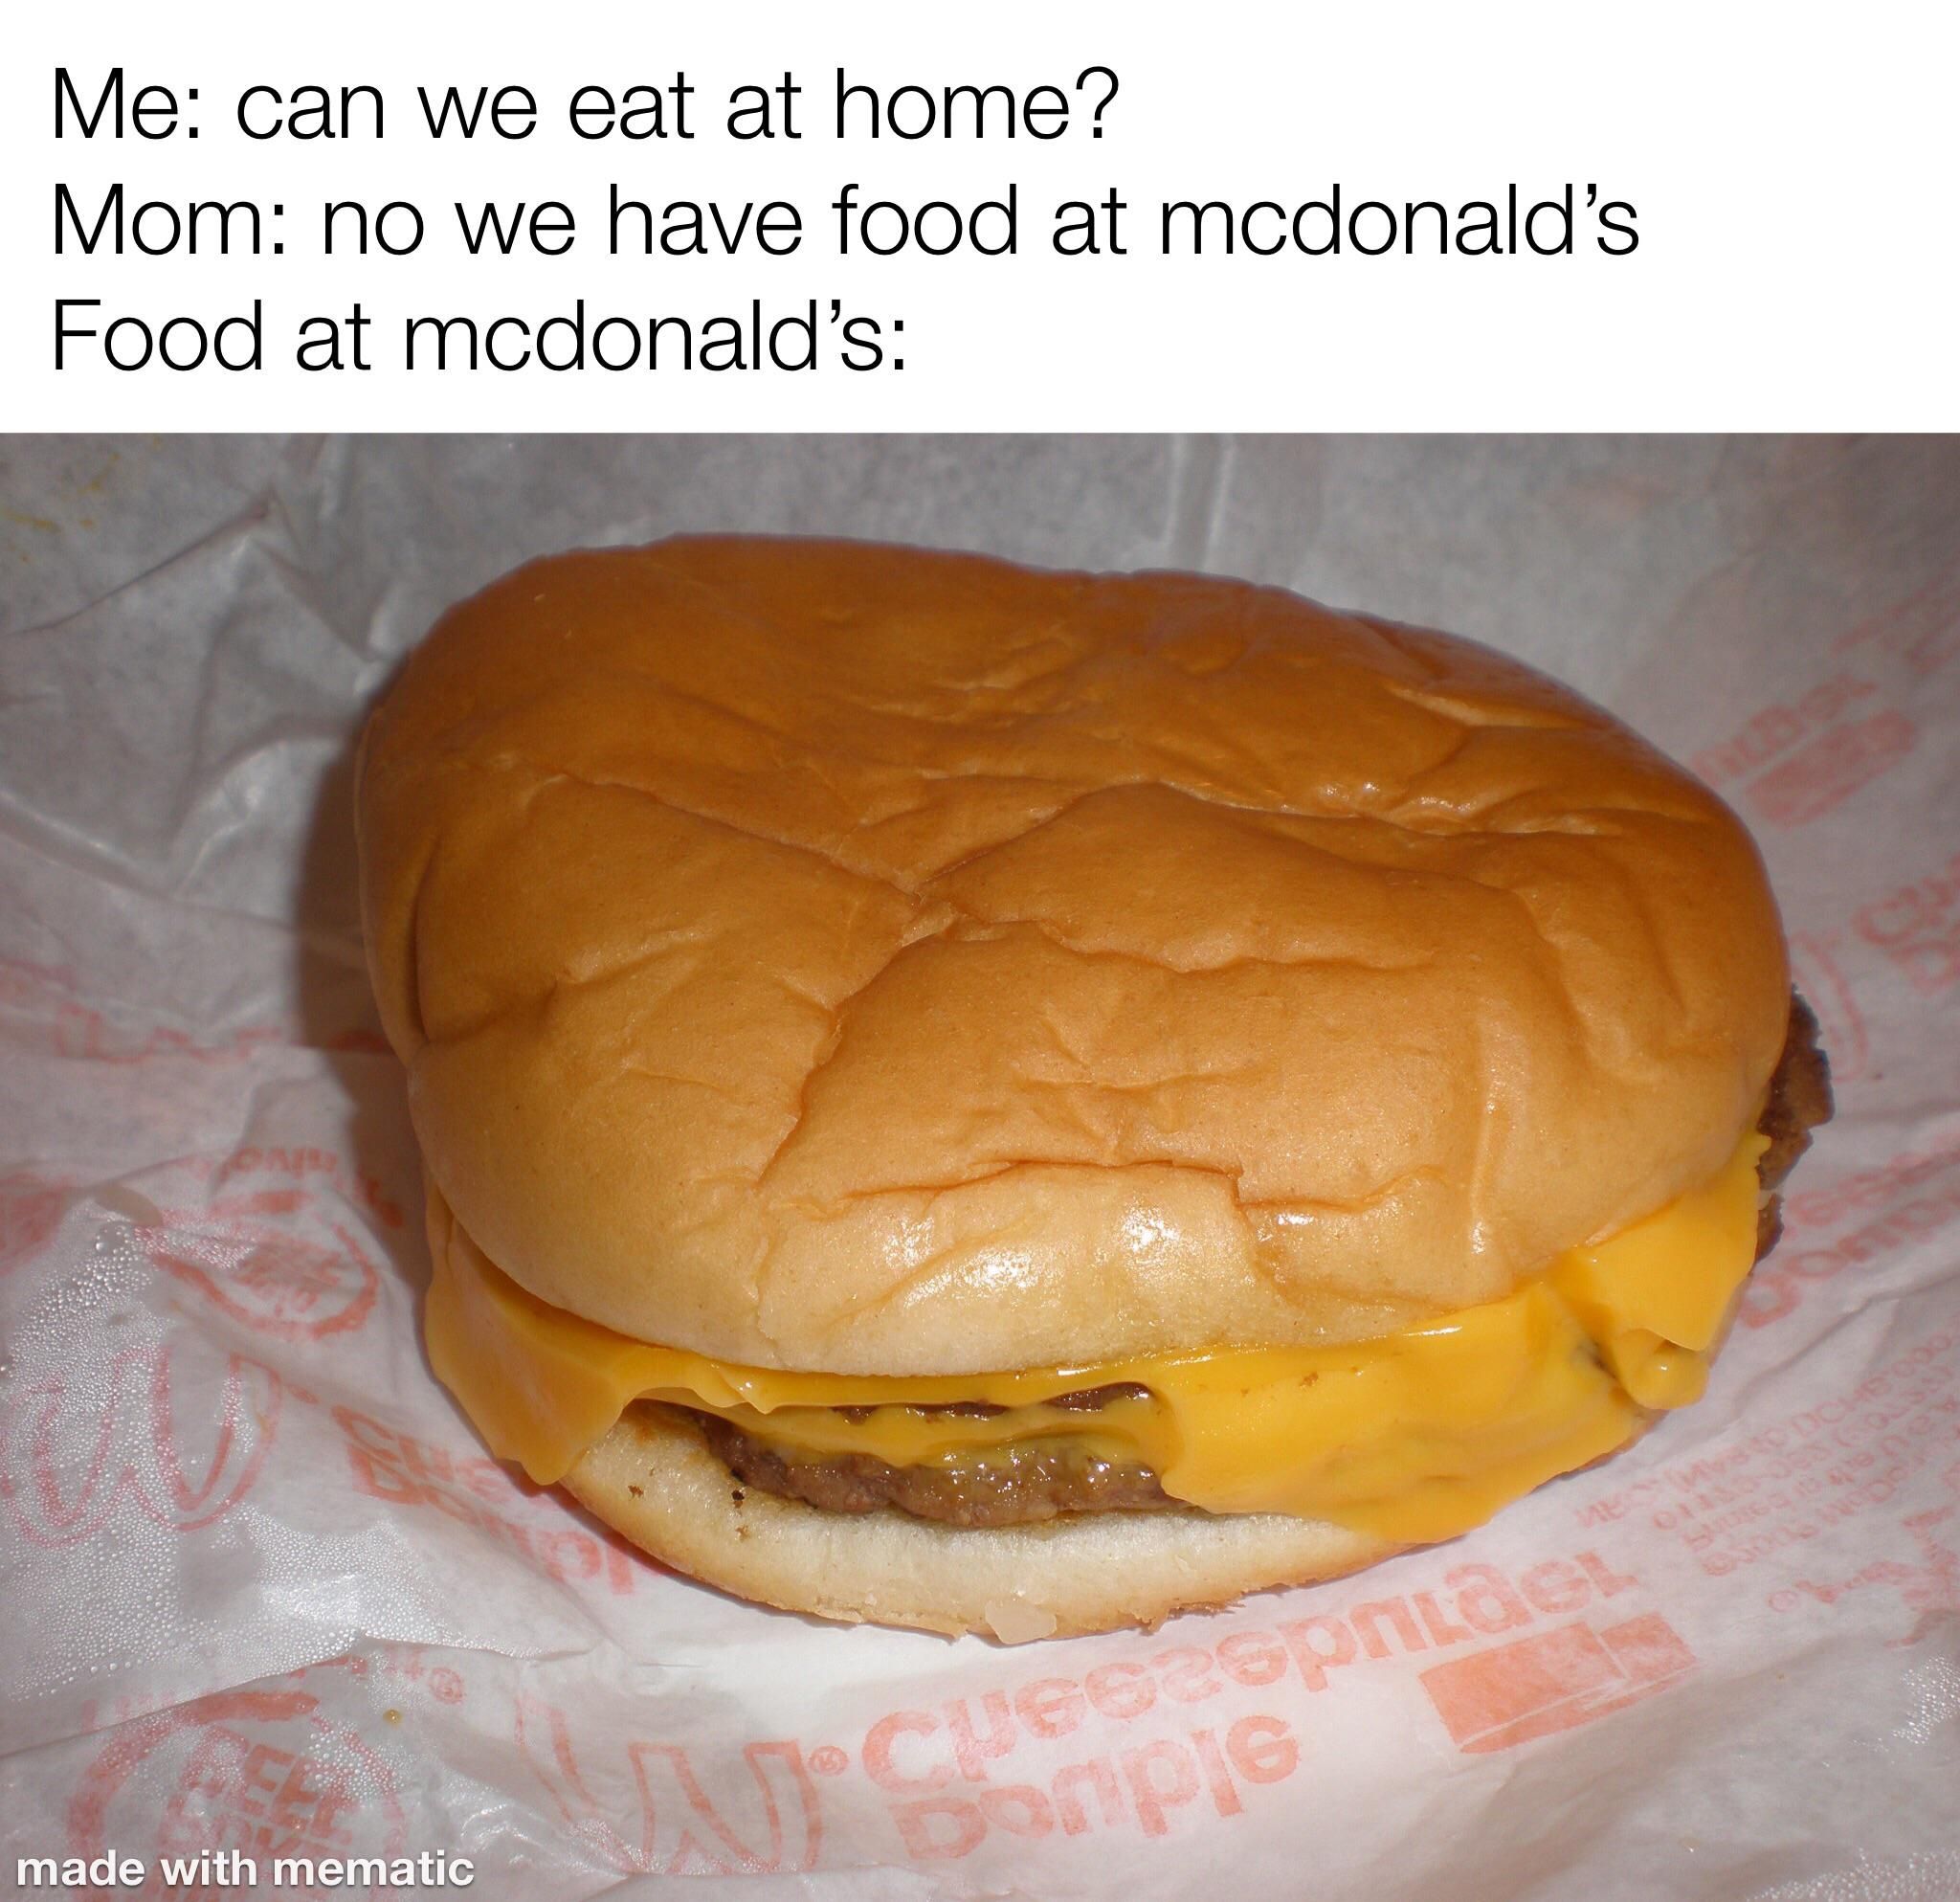 we have food at home at mcdonald’s